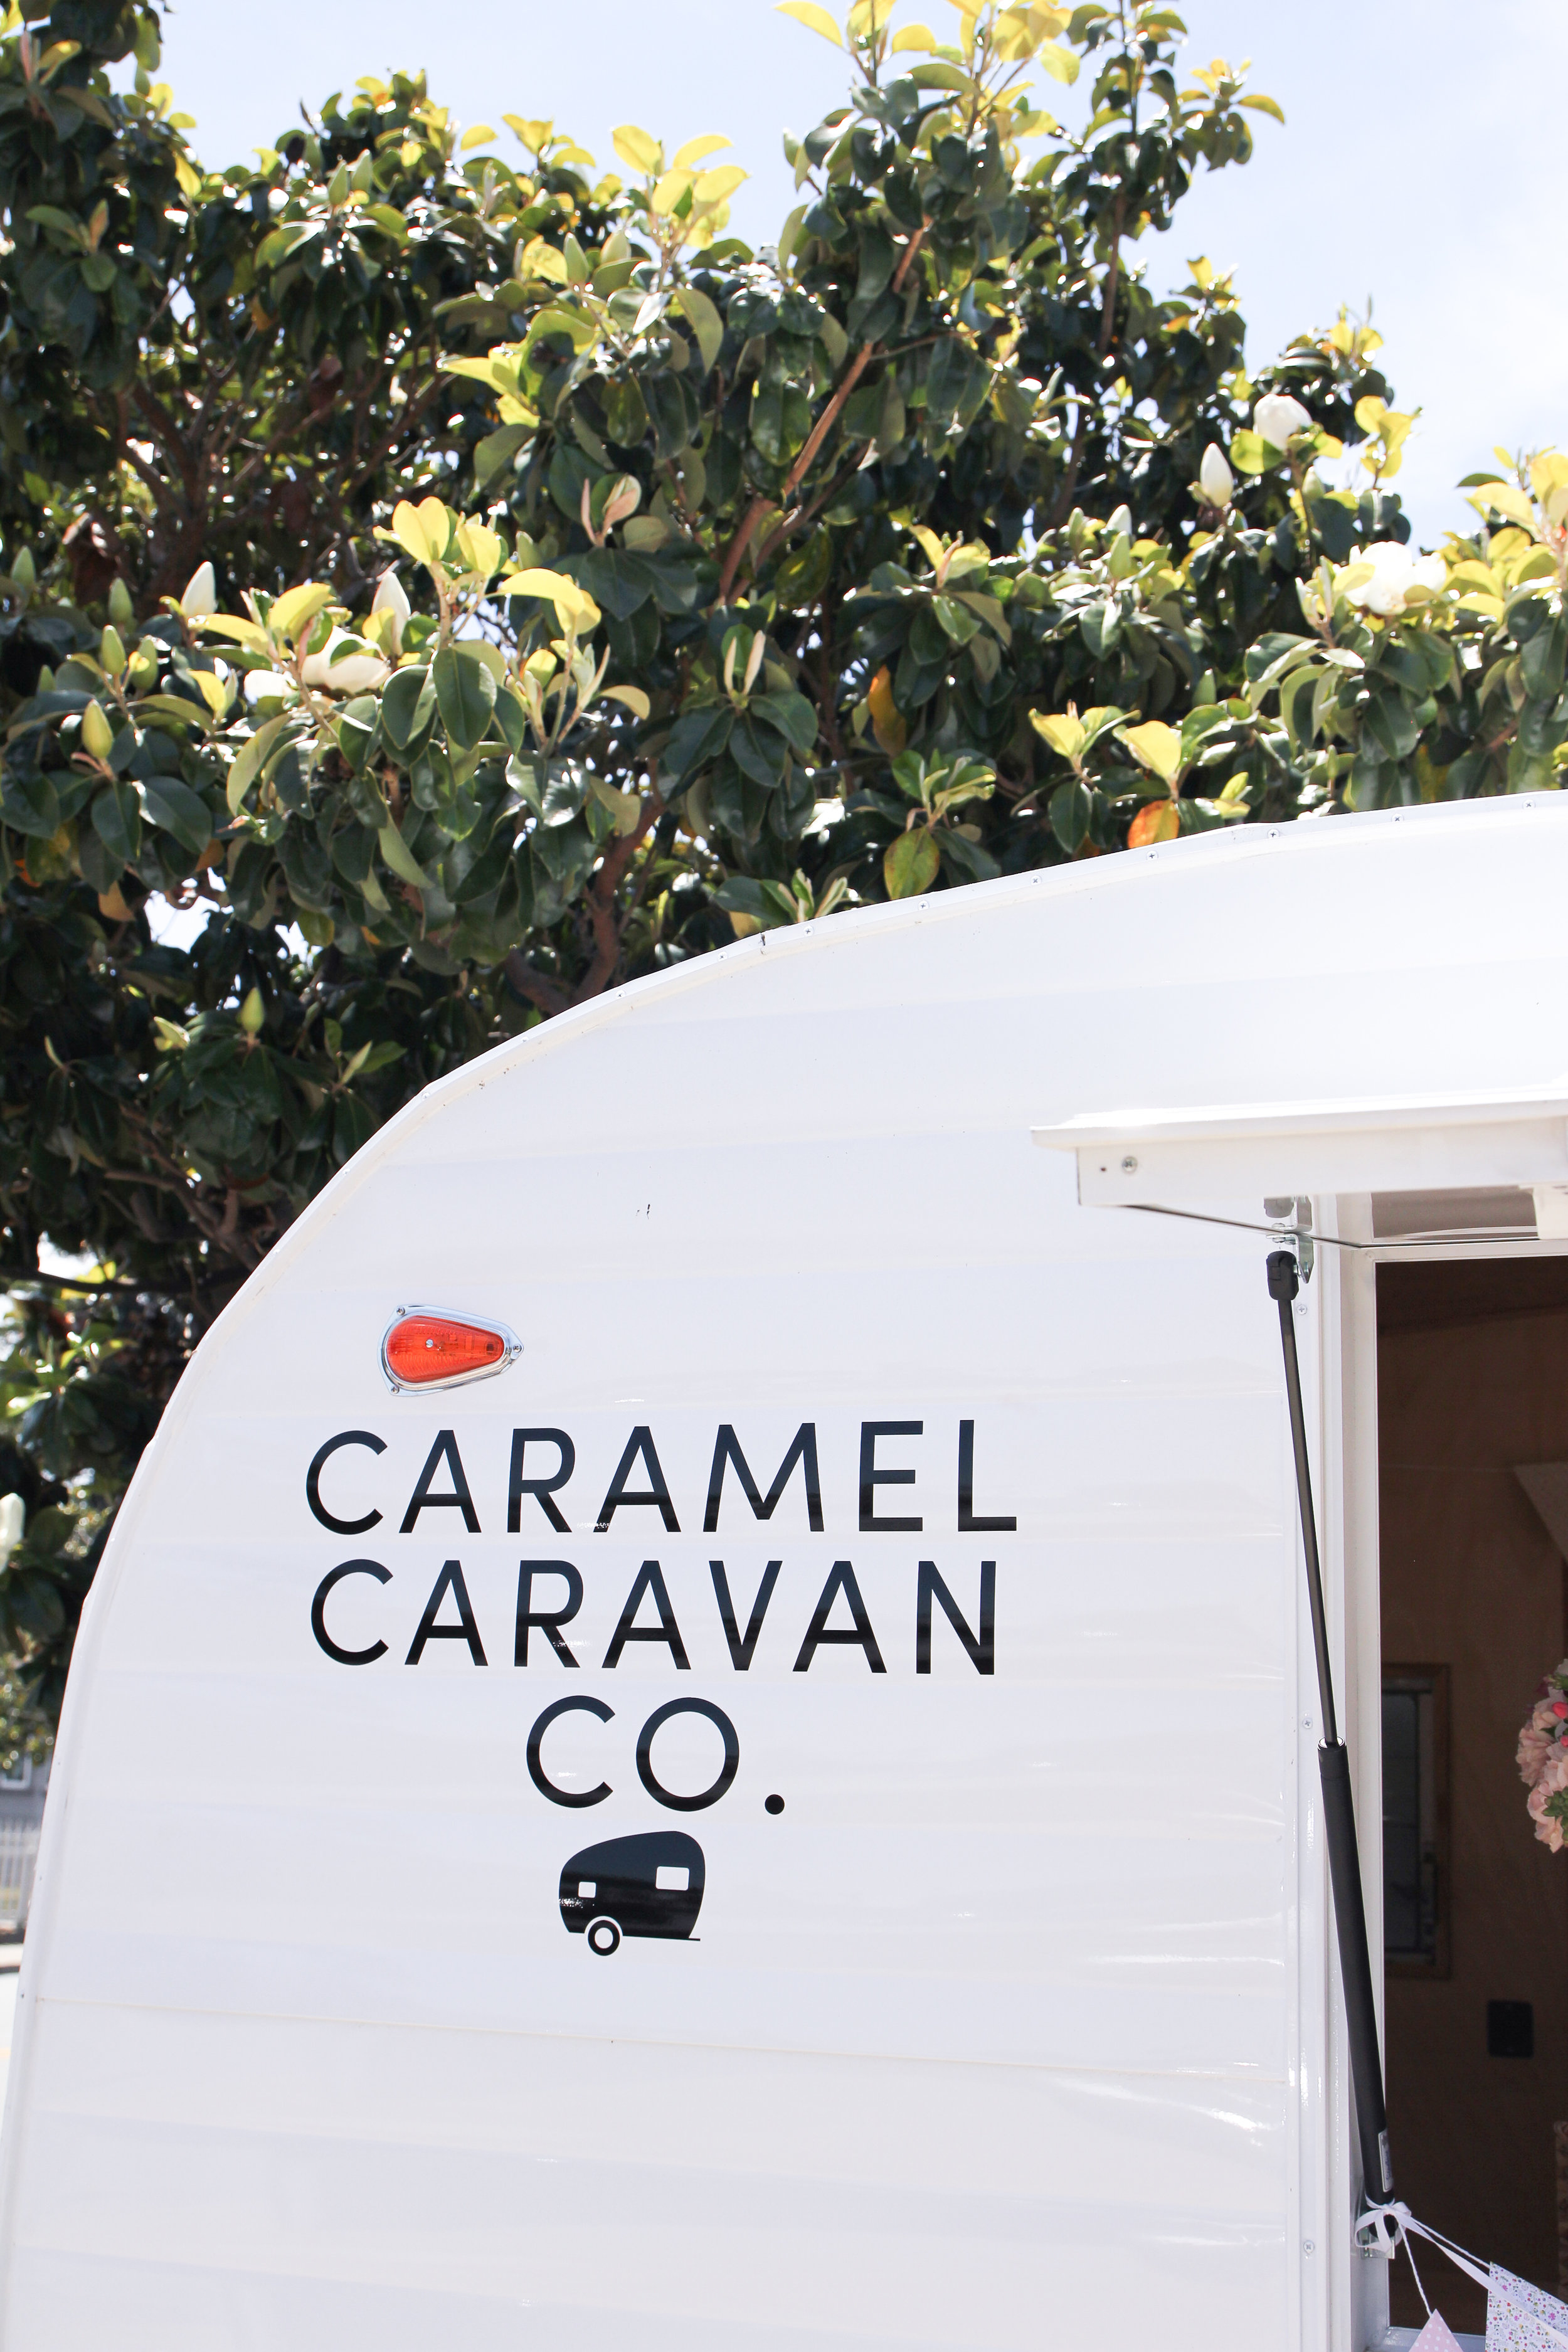 caramel caravan logo on trailer